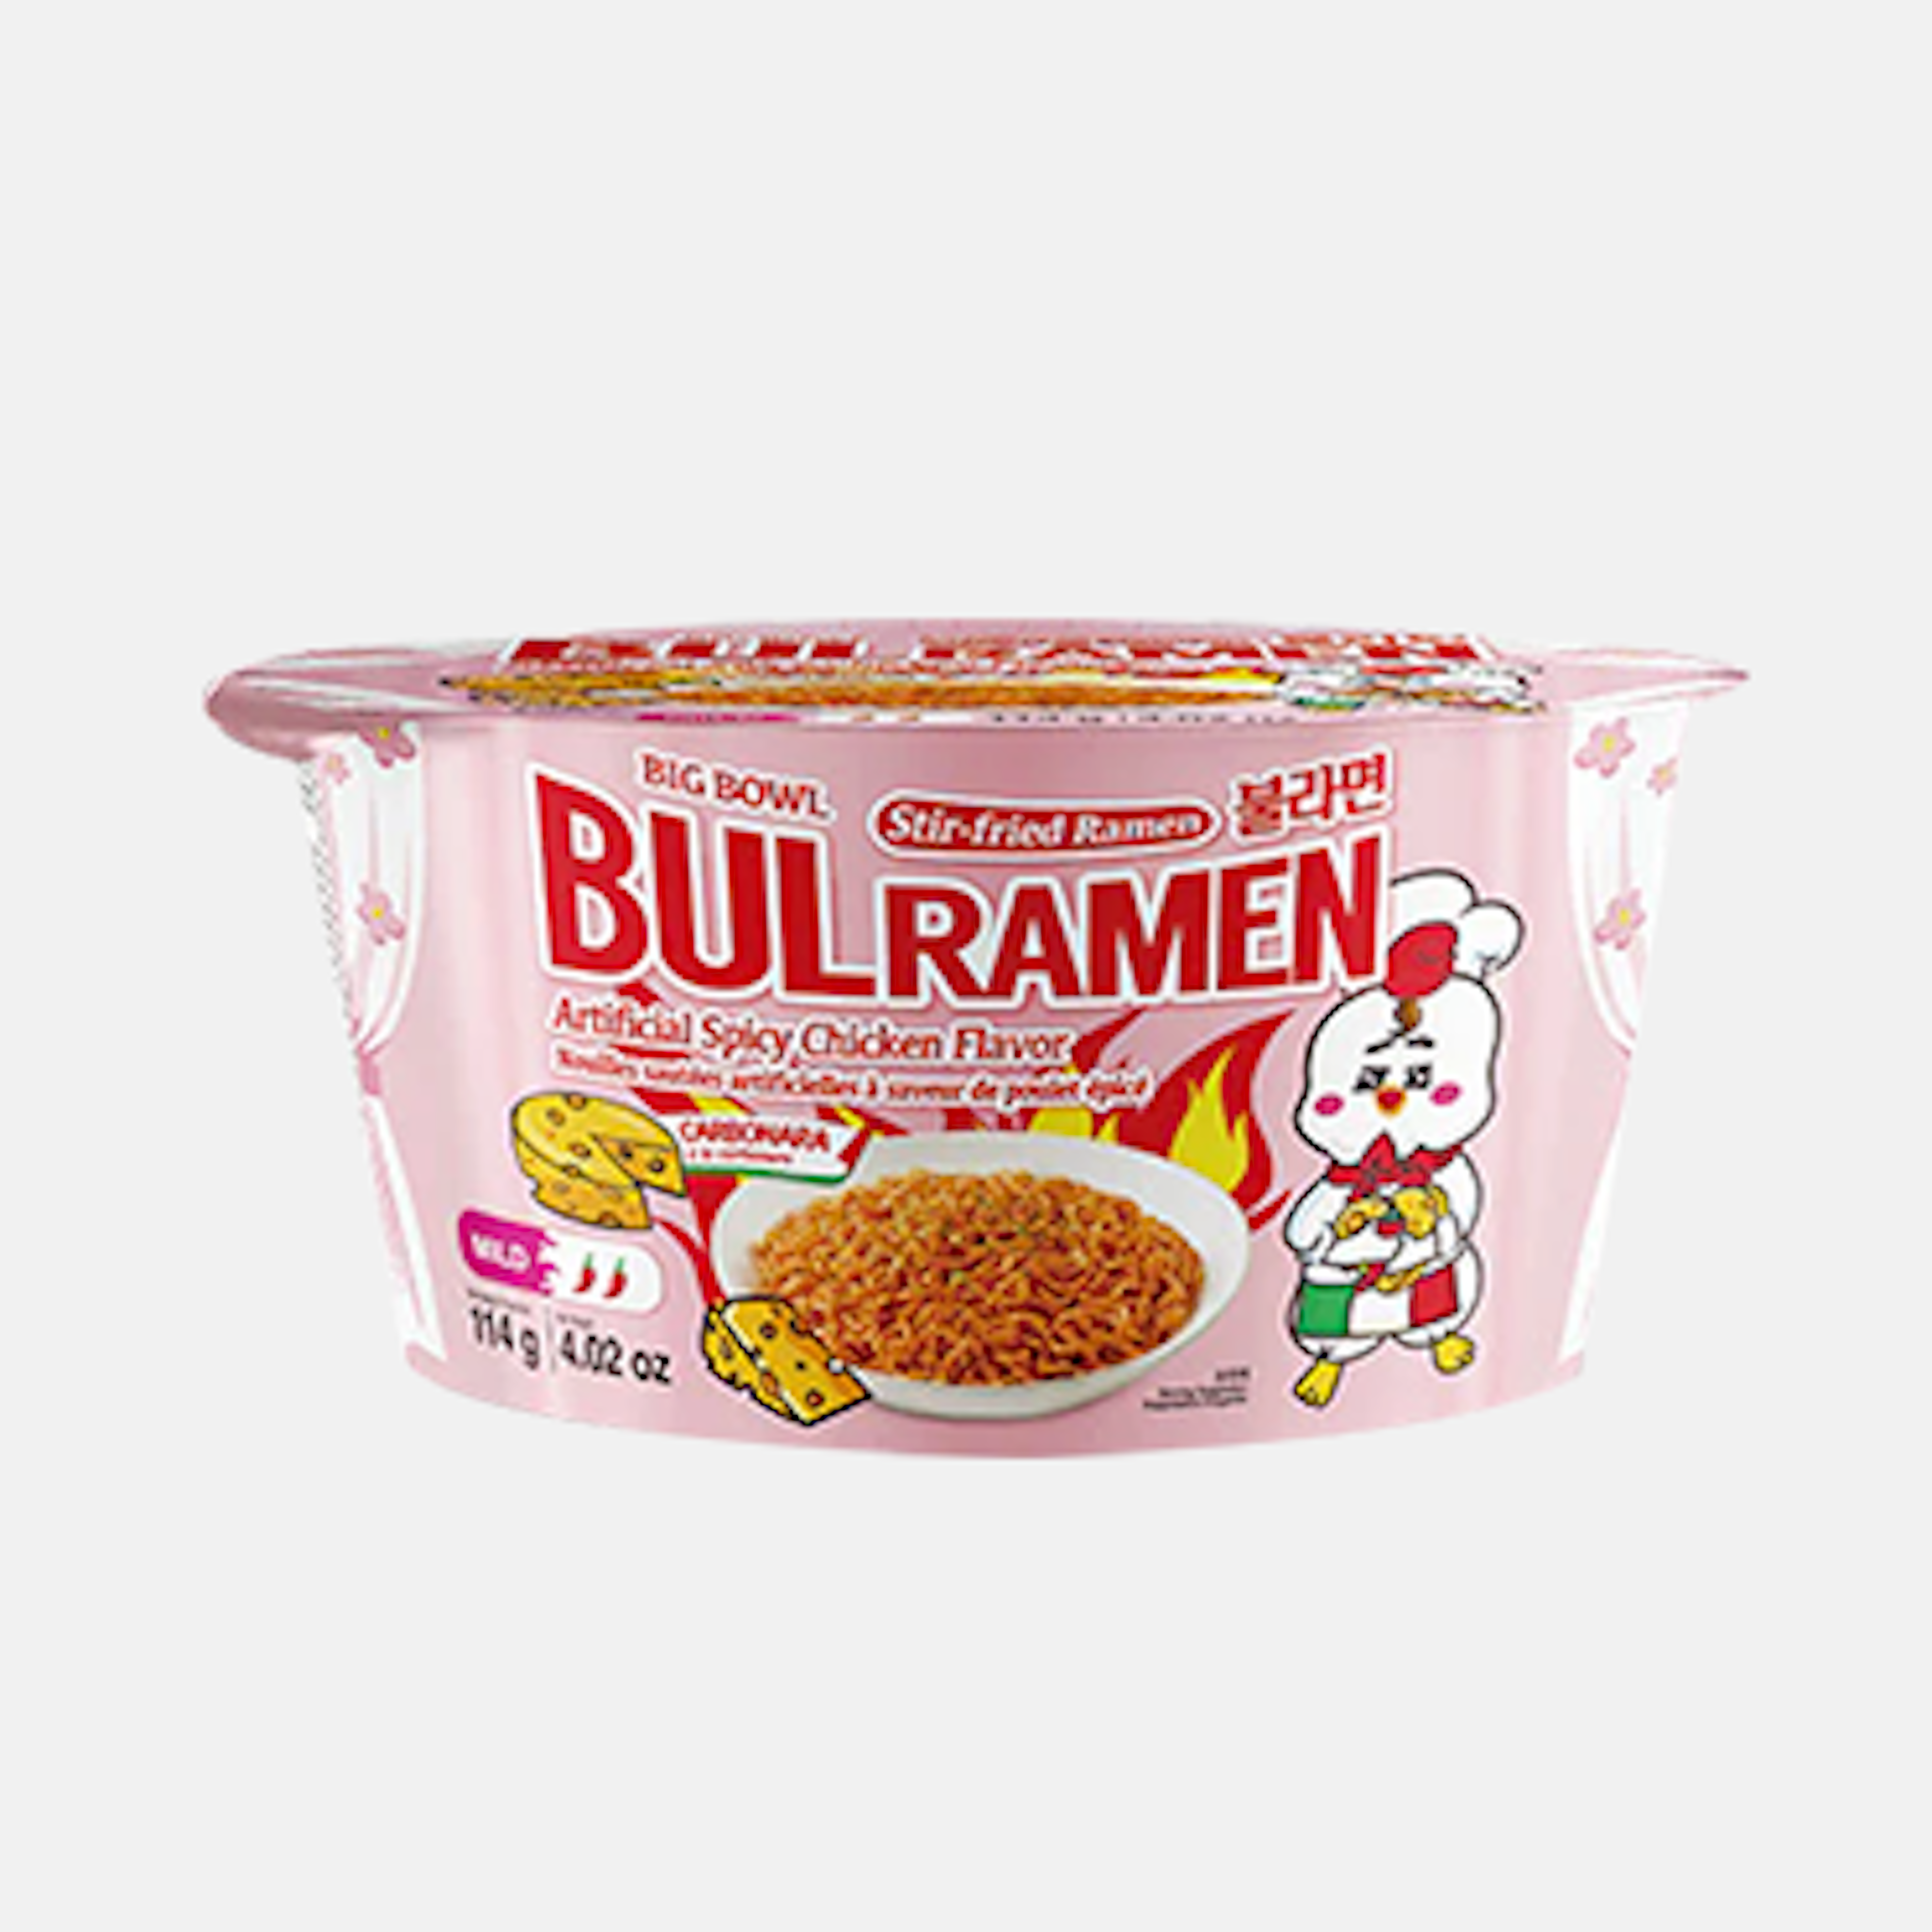 Raon Bulramen Spicy Chicken Flavor Ramyeon Carbonara Big Bowl 114g - Würzige Carbonara Cup-Ramen